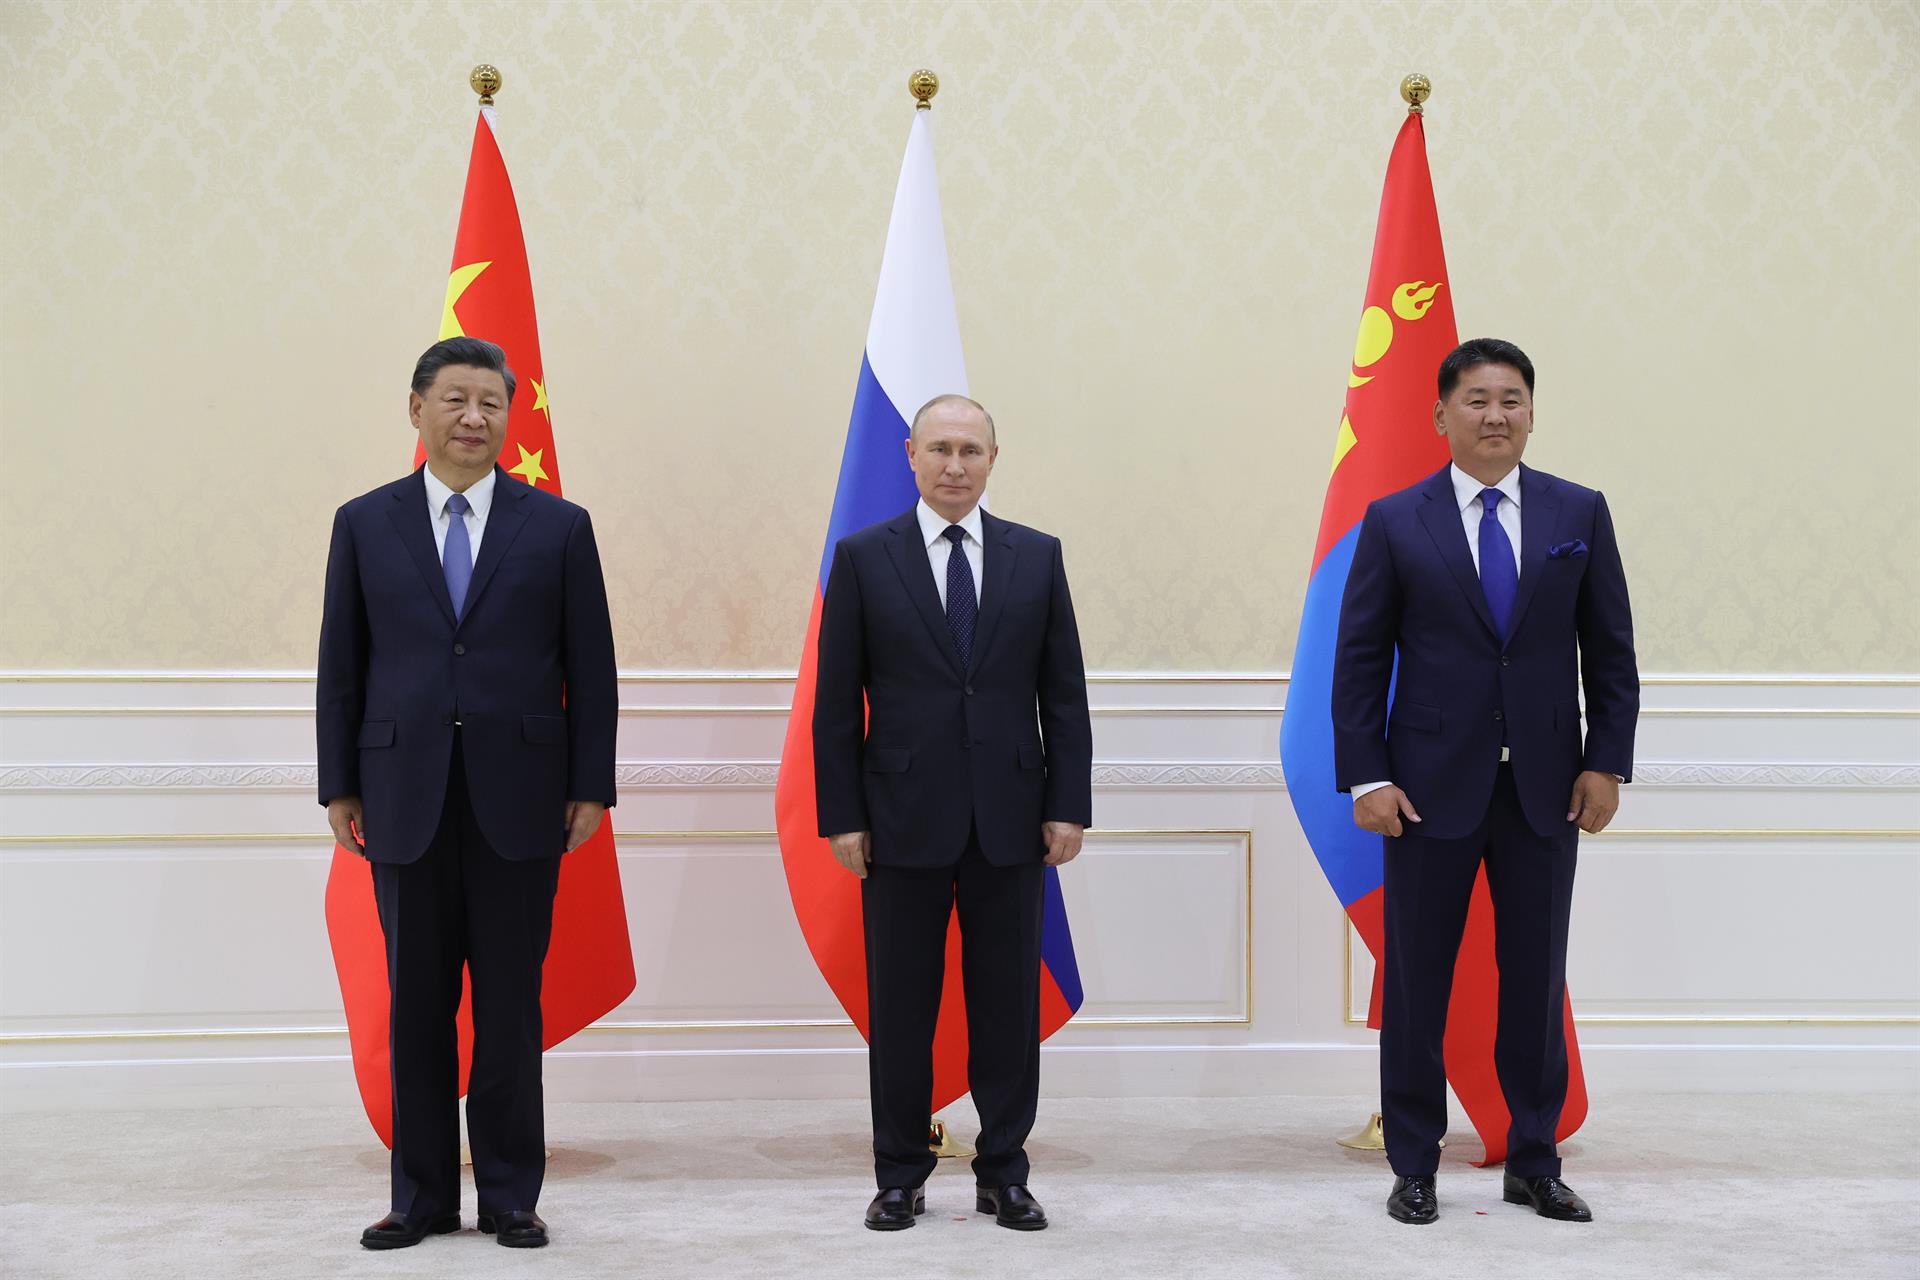 Primera reunión de Putin i Xi después de la invasión de Ucrania: apoyo mutuo